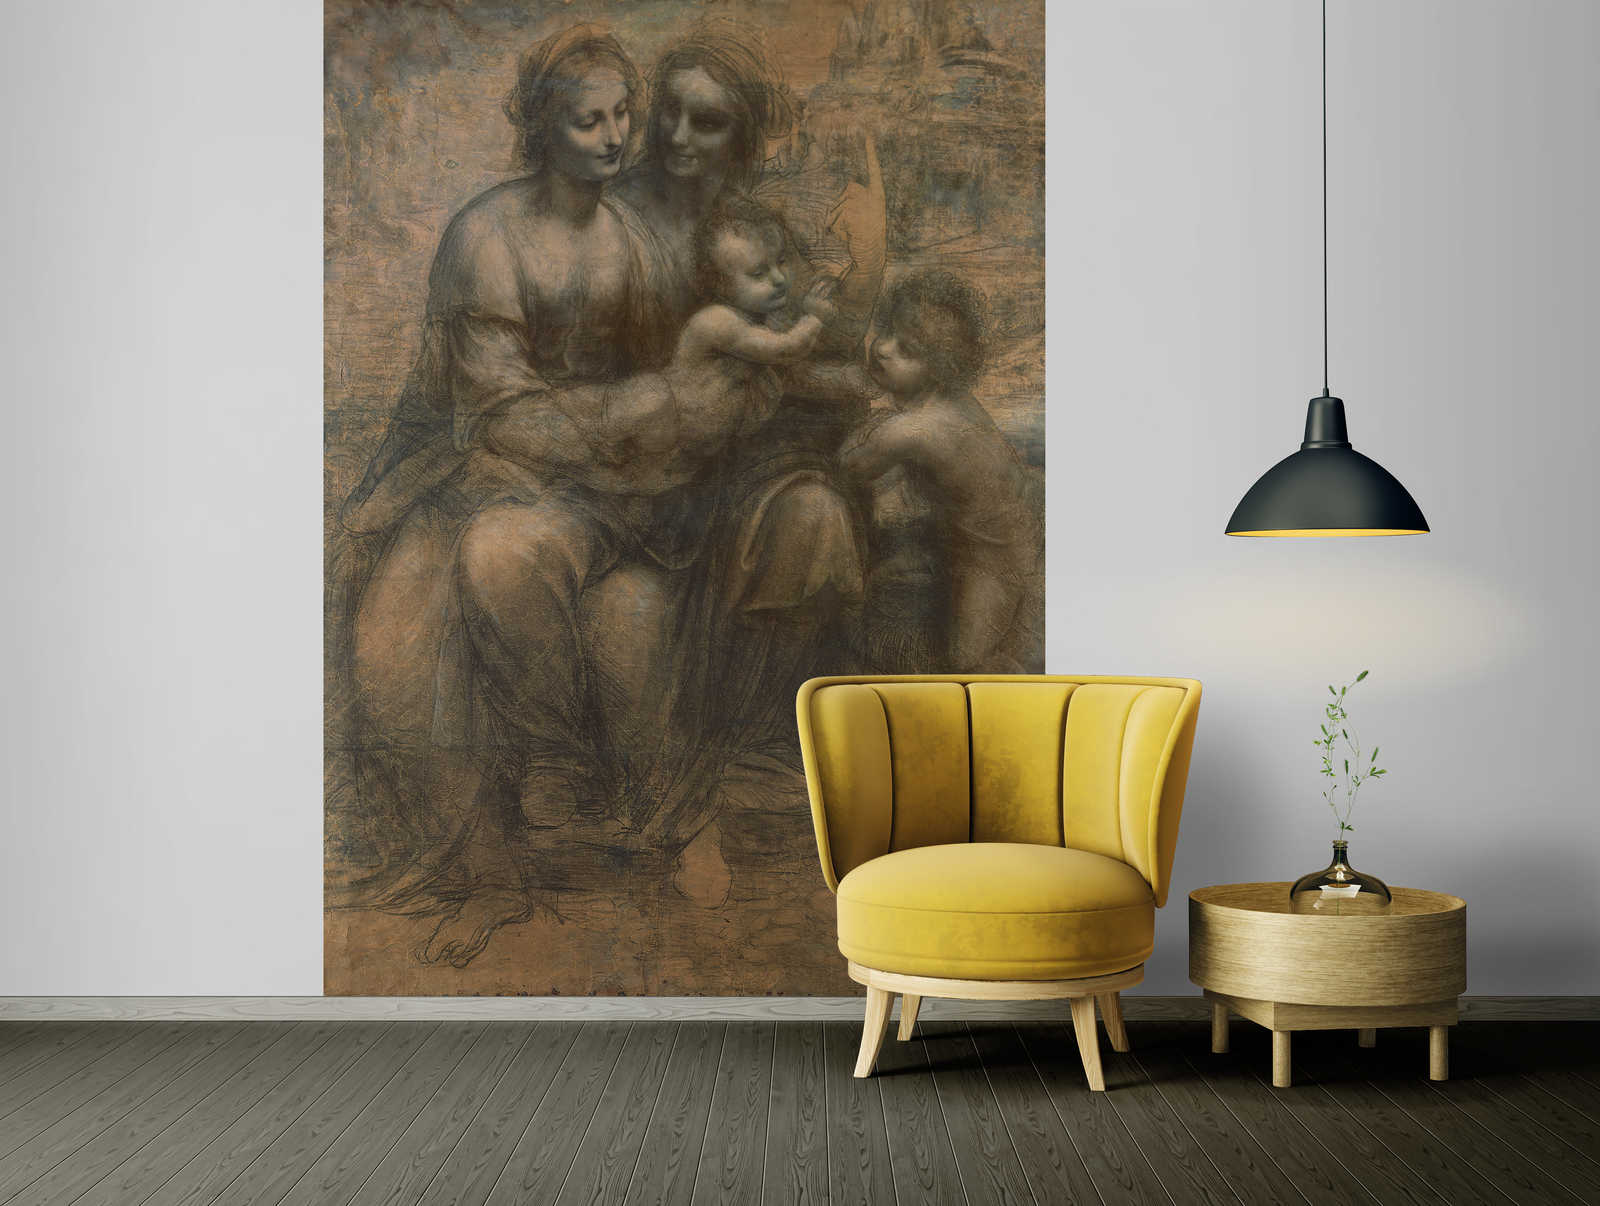             Photo wallpaper "The Virgin and Child" by Leonardo da Vinci
        